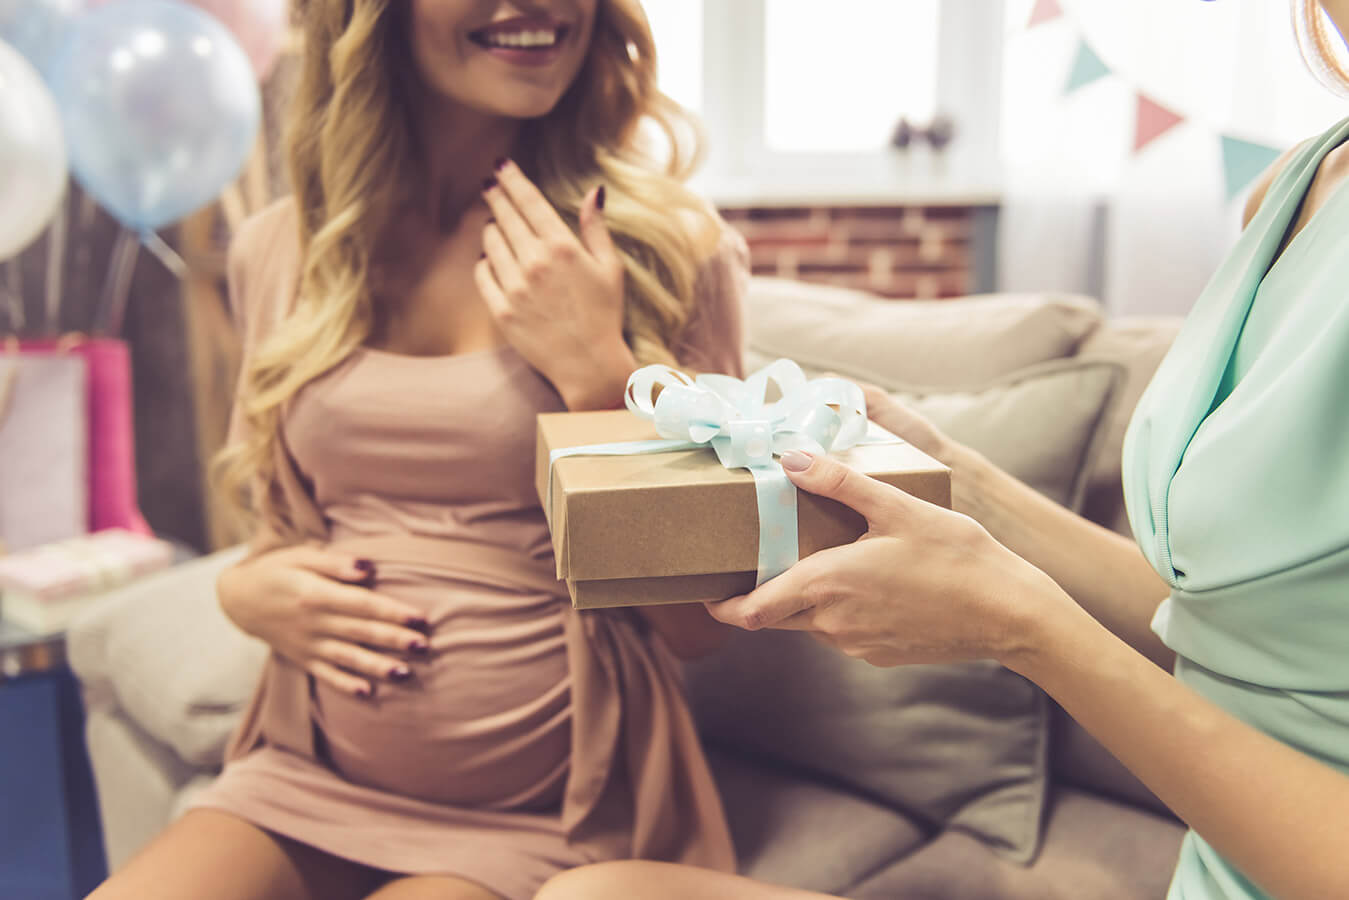 Życzenia “Szczęśliwego rozwiązania”, czyli czego życzyć przed porodem?